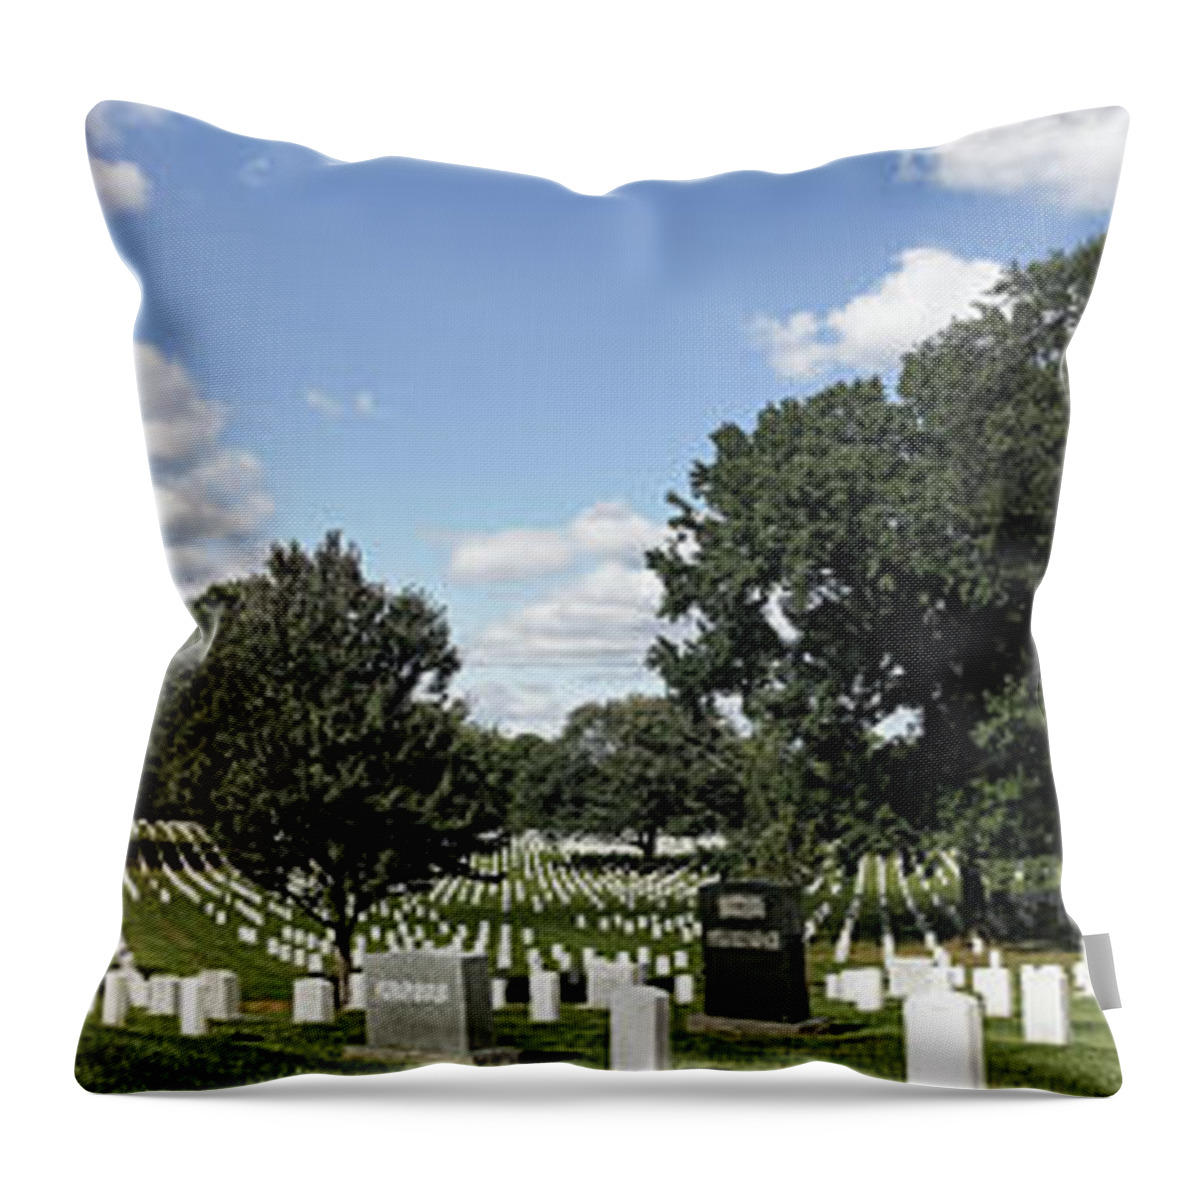 Arlington National Cemetery Panorama Throw Pillow featuring the photograph Arlington National Cemetery Panorama by Doolittle Photography and Art